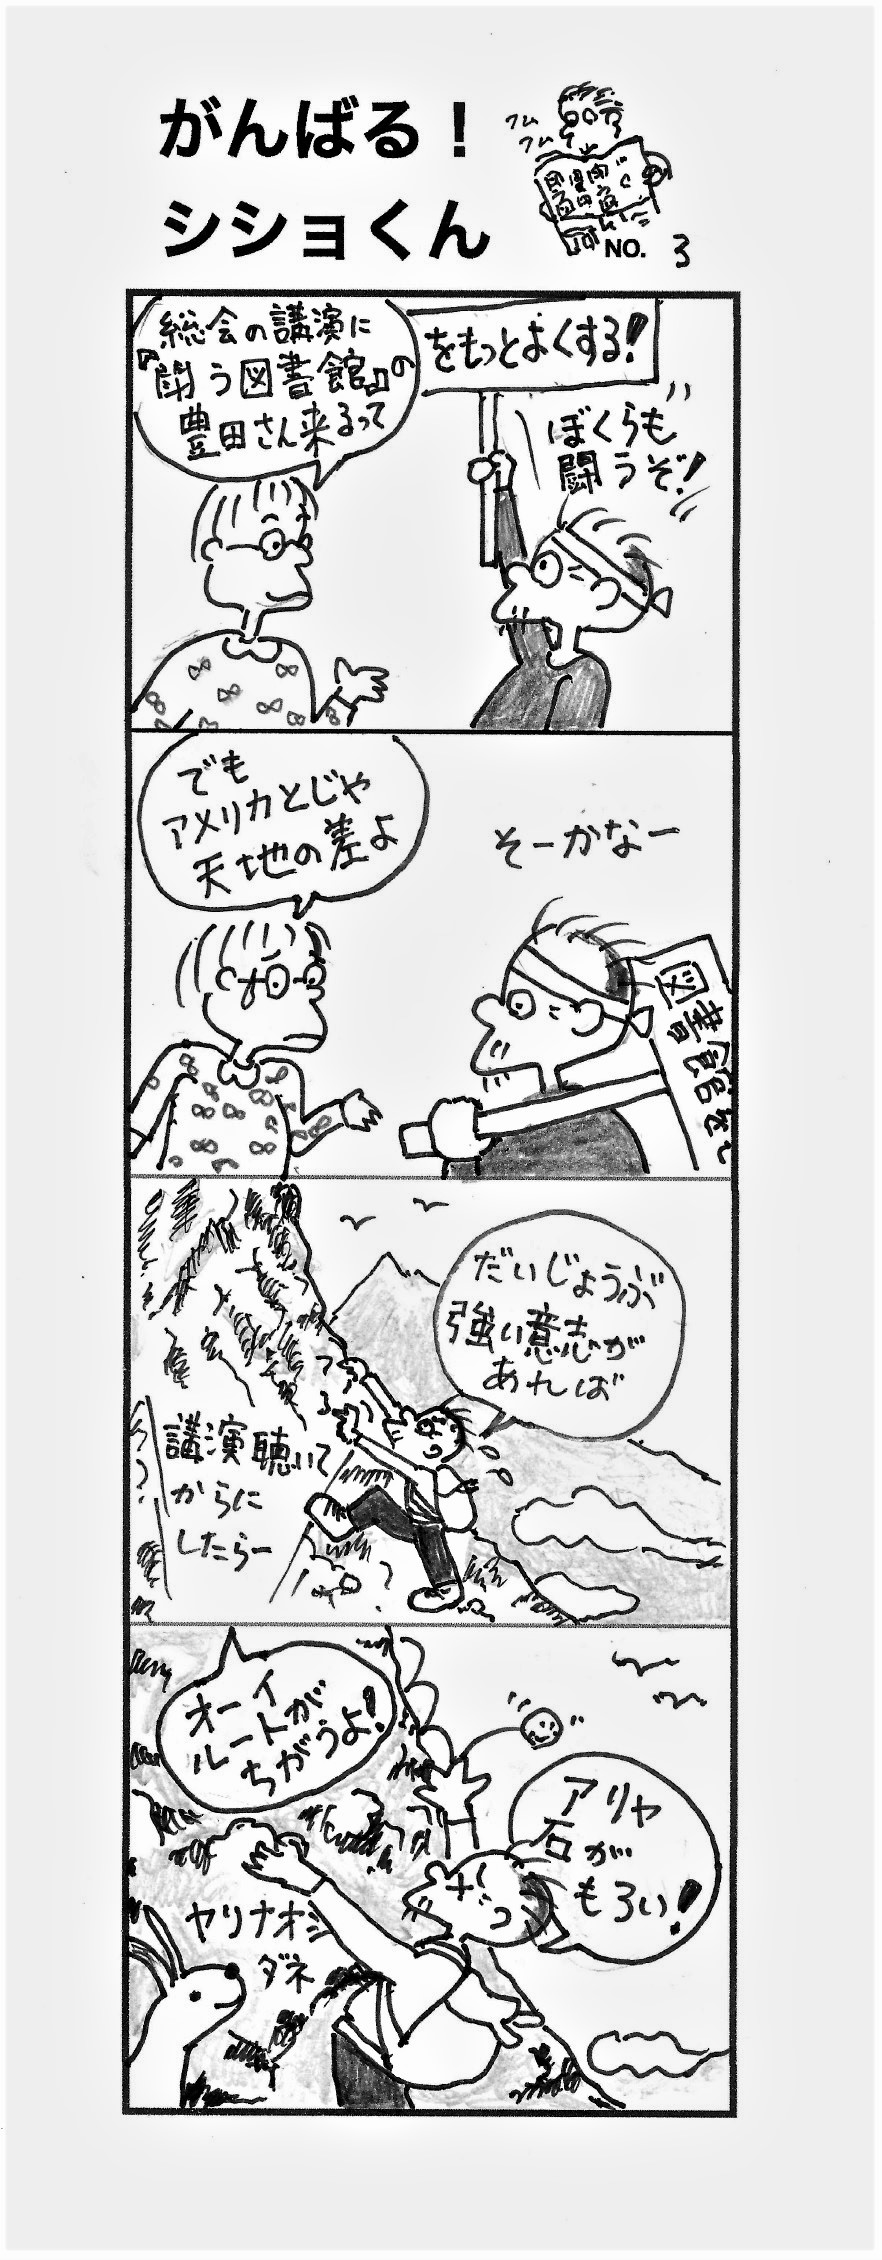 がんばるシショくん③連載漫画の画像